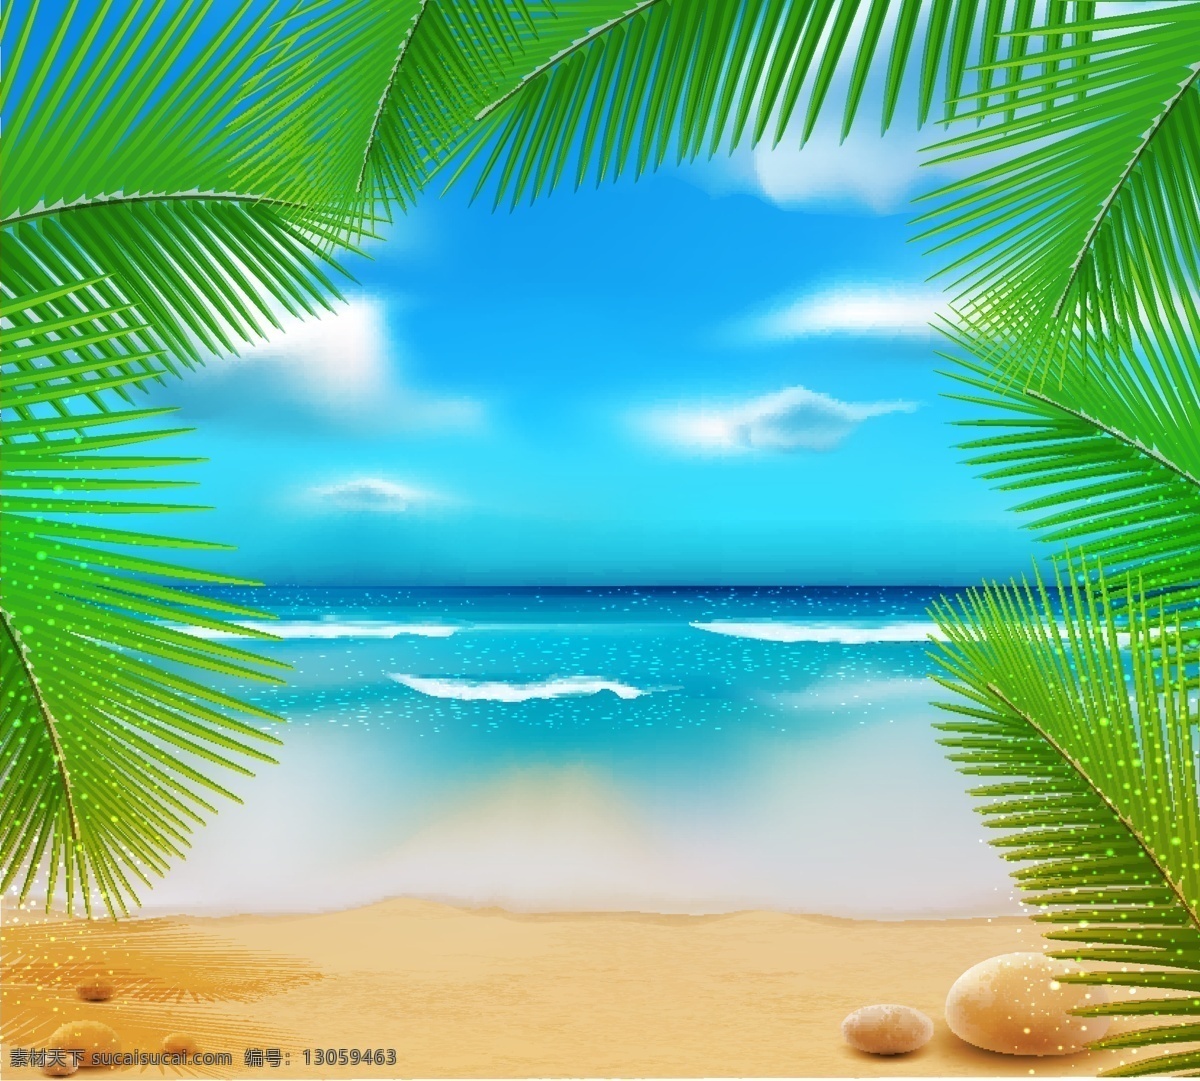 沙滩风景插画 沙滩风景 海滩 风景插画 沙滩背景 自然风光 空间环境 矢量素材 白色